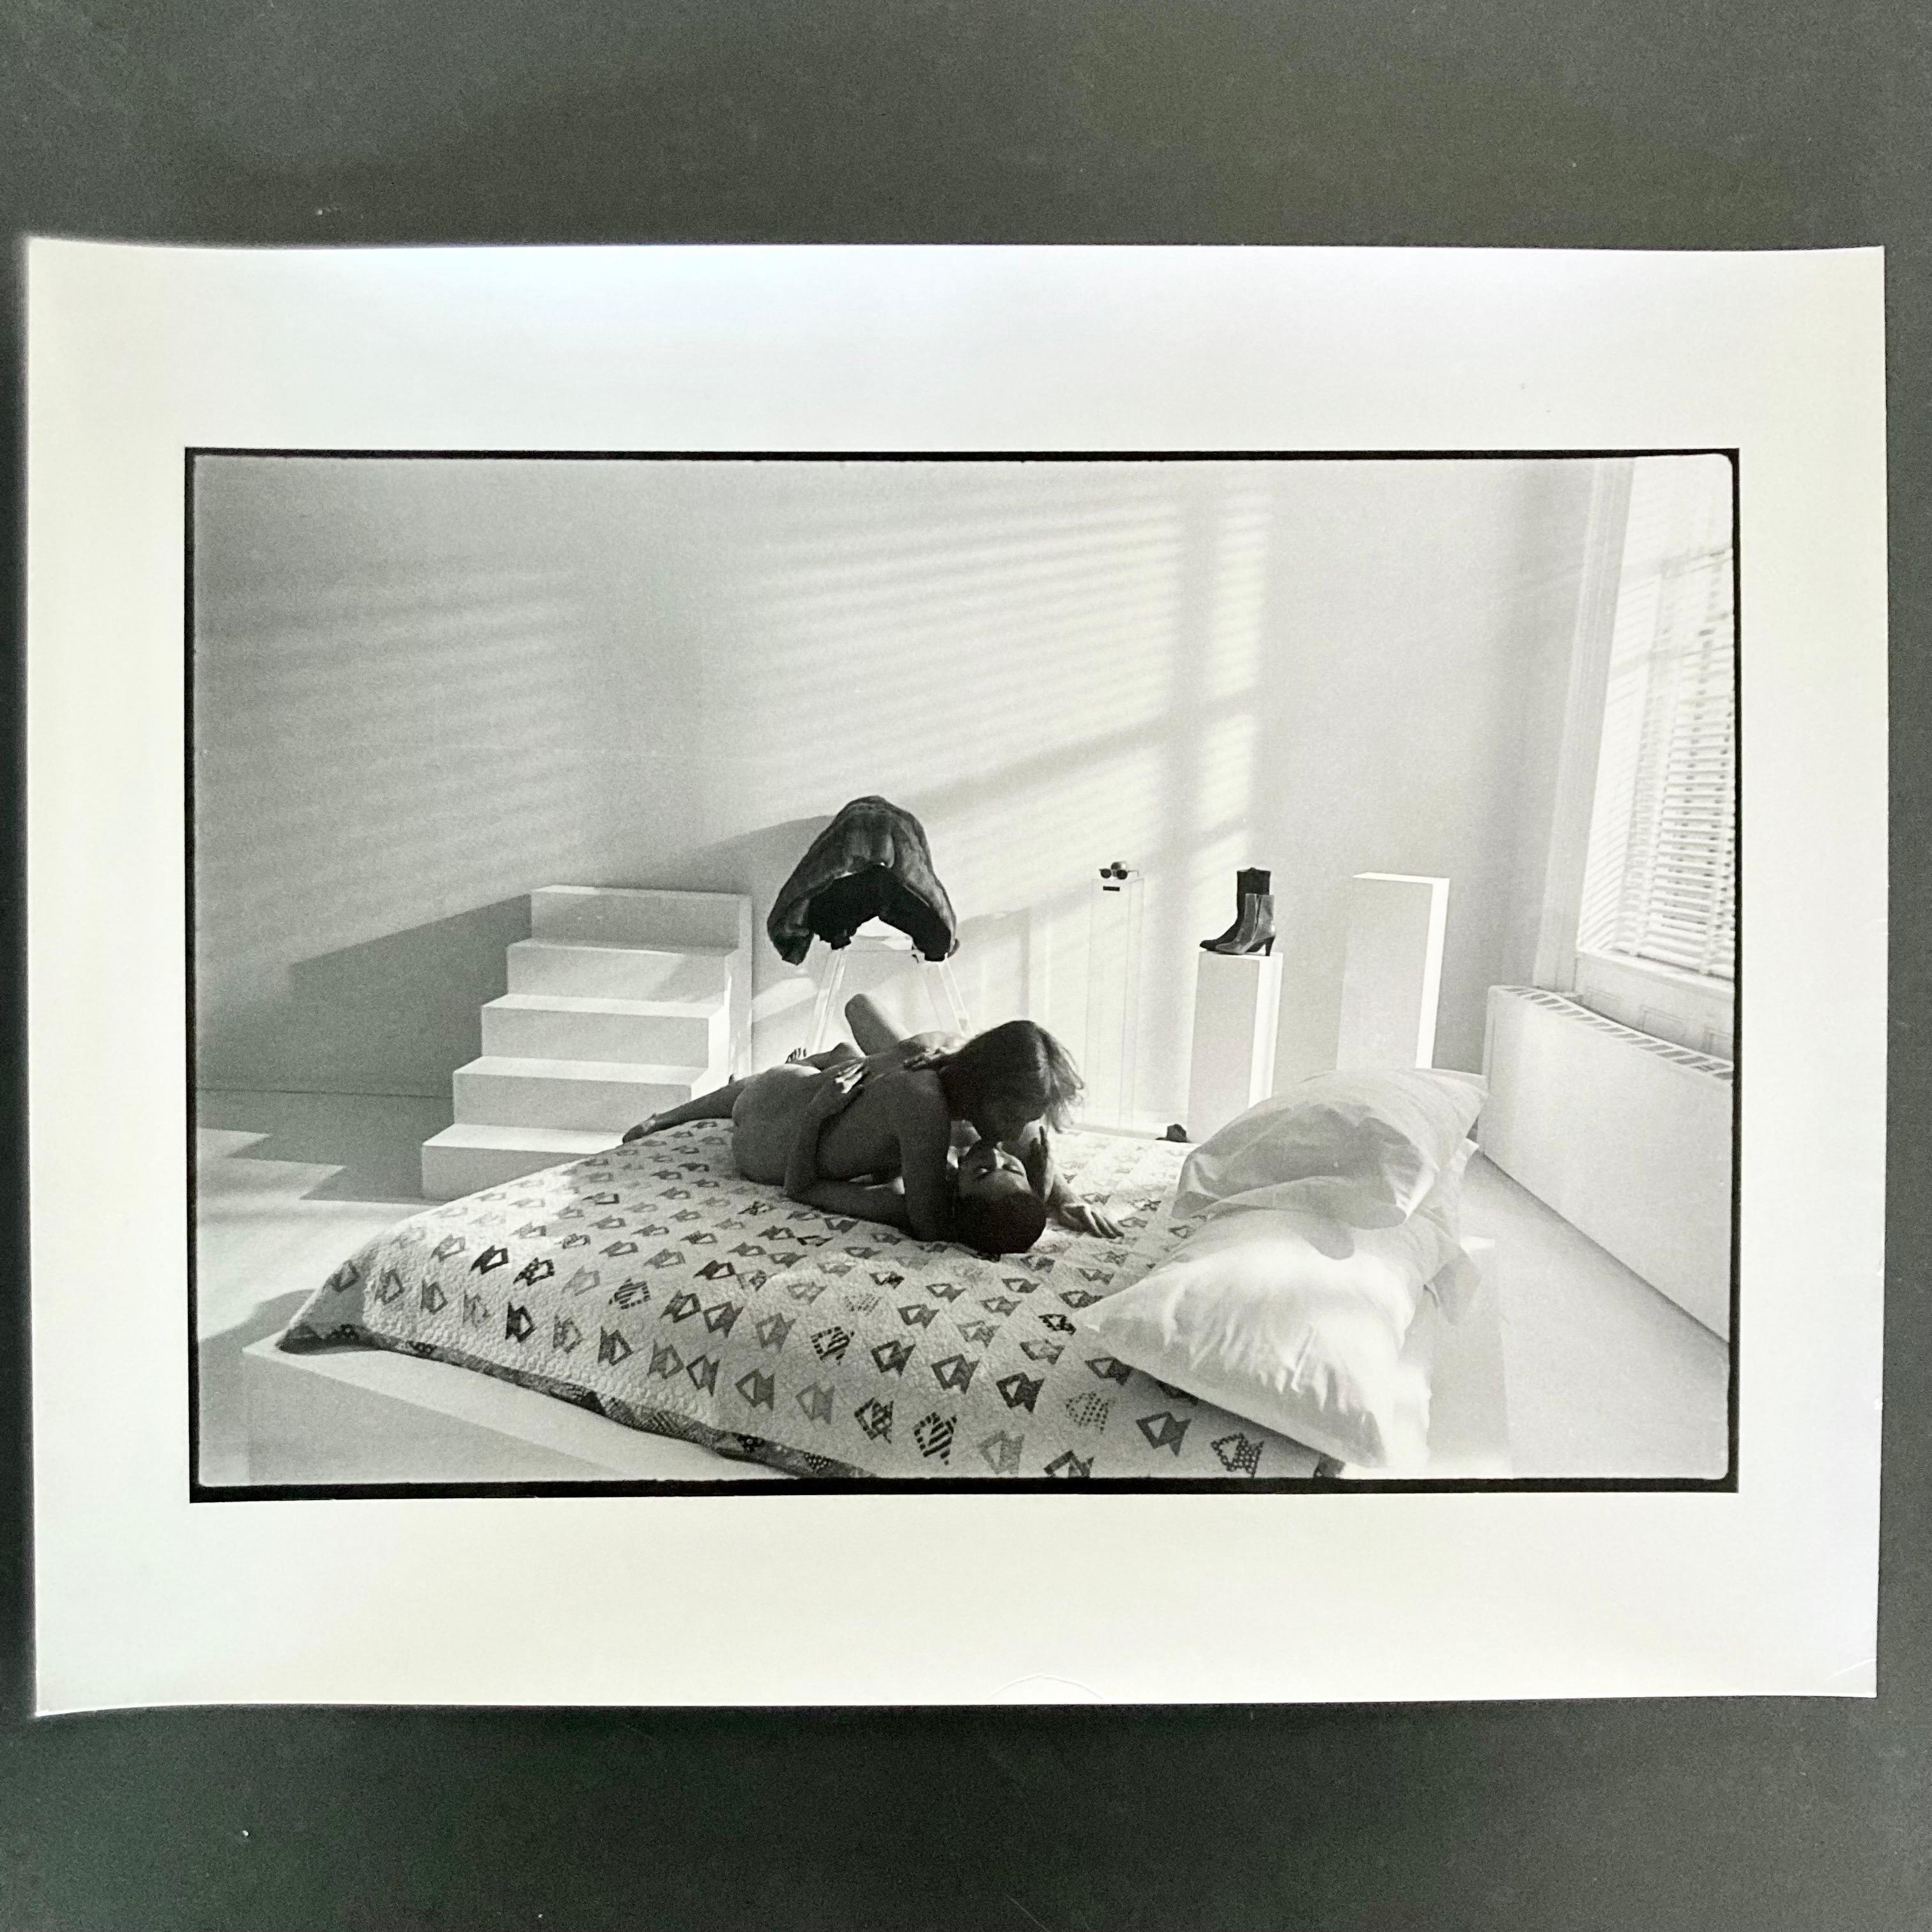 Vintage-Dunkelkammerabzug von John Lennon und Yoko Ono, aufgenommen in New York, nackt im Bett, 26. November 1980. Dieser Druck ist ein originaler, handgedruckter Dunkelkammerabzug des Fotografen Allan Tannenbaum. 

Dieser 11x14" große Vintage-Druck